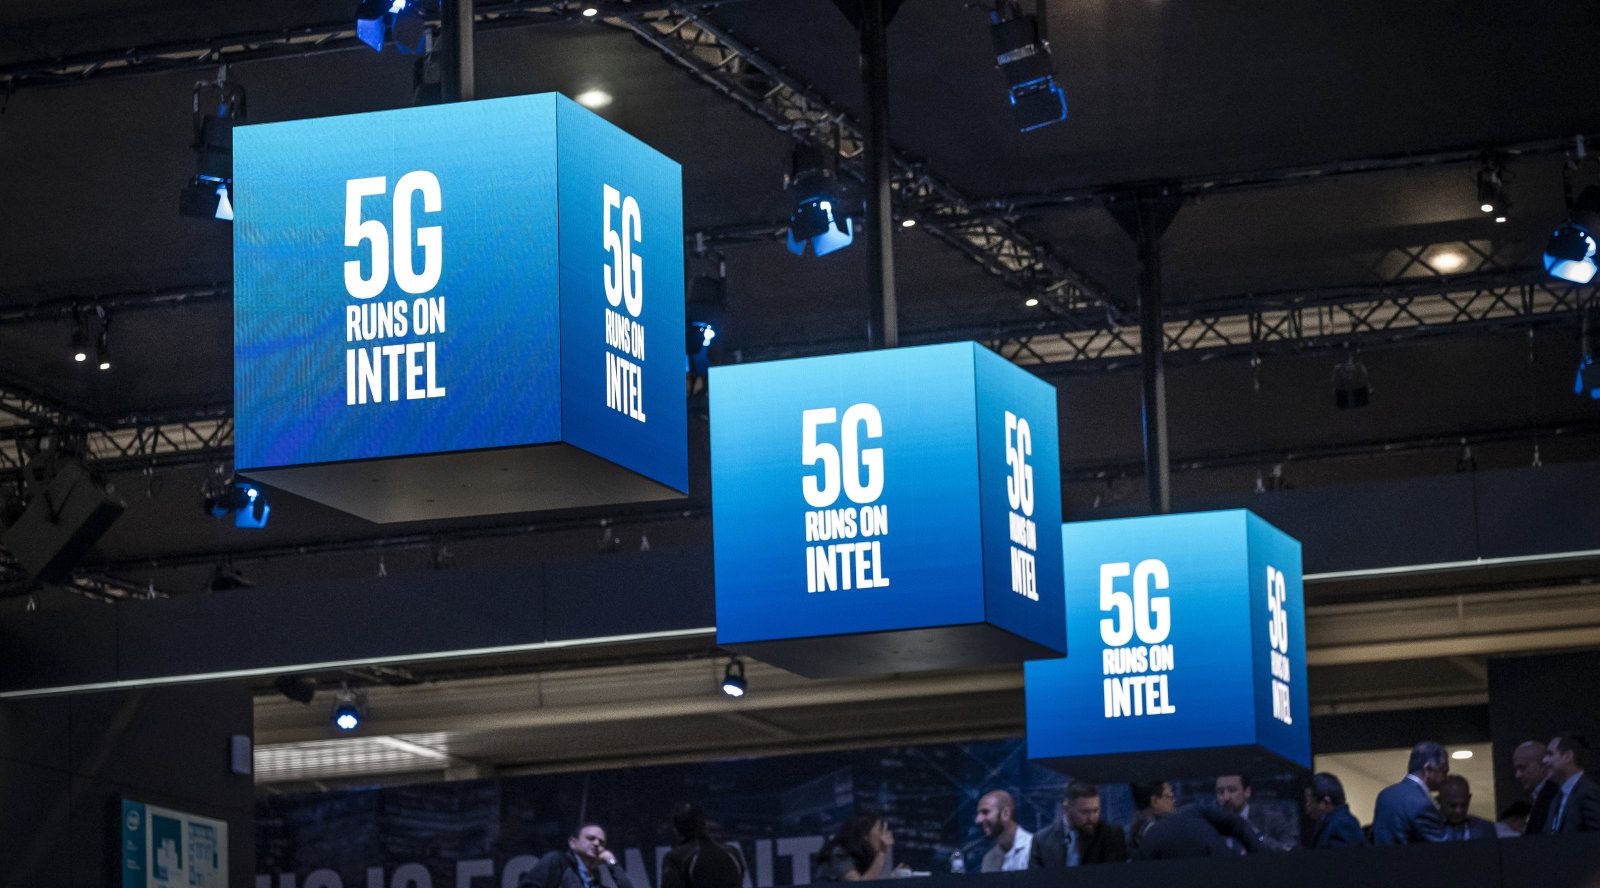 Intel anunció una línea extendida  de hardware, software y soluciones para la infraestructura de red. Con el fin de beneficiarse con la tecnología 5G